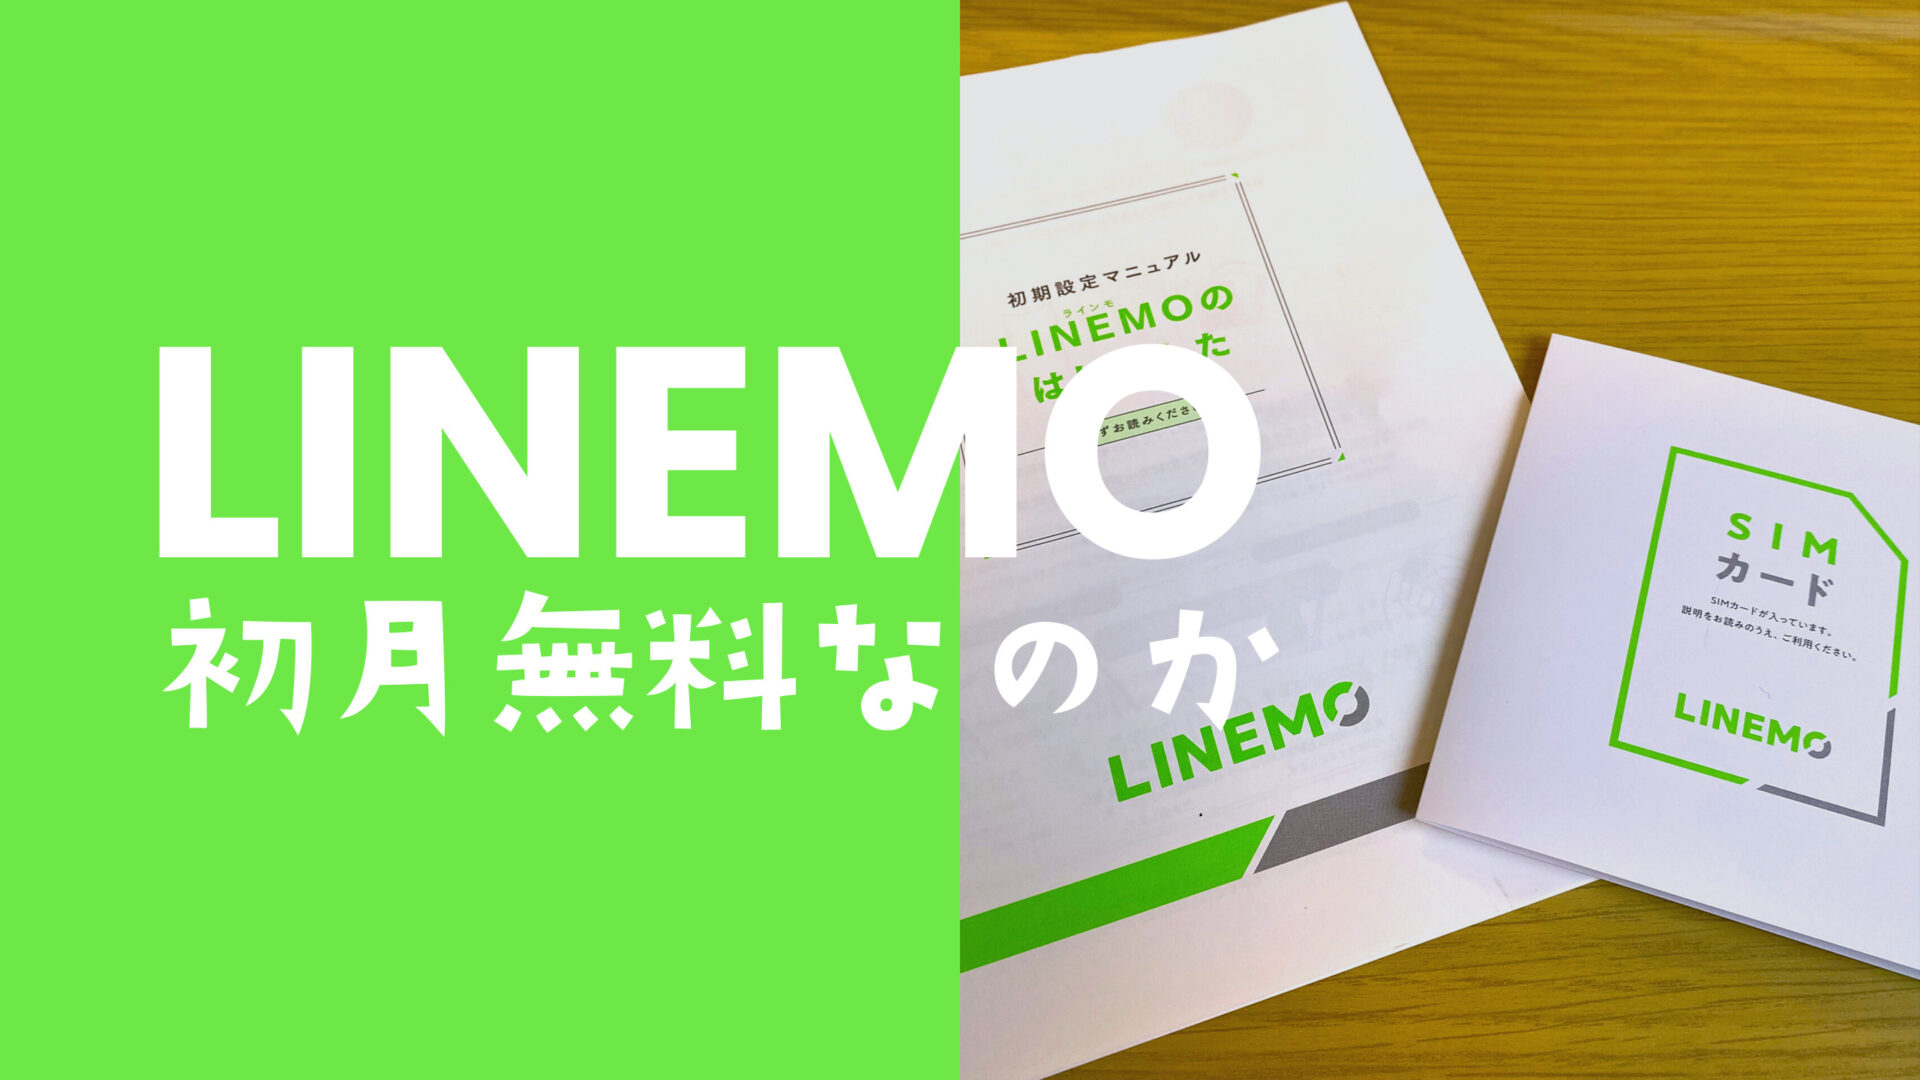 LINEMO(ラインモ)は初月無料になるのか解説のサムネイル画像